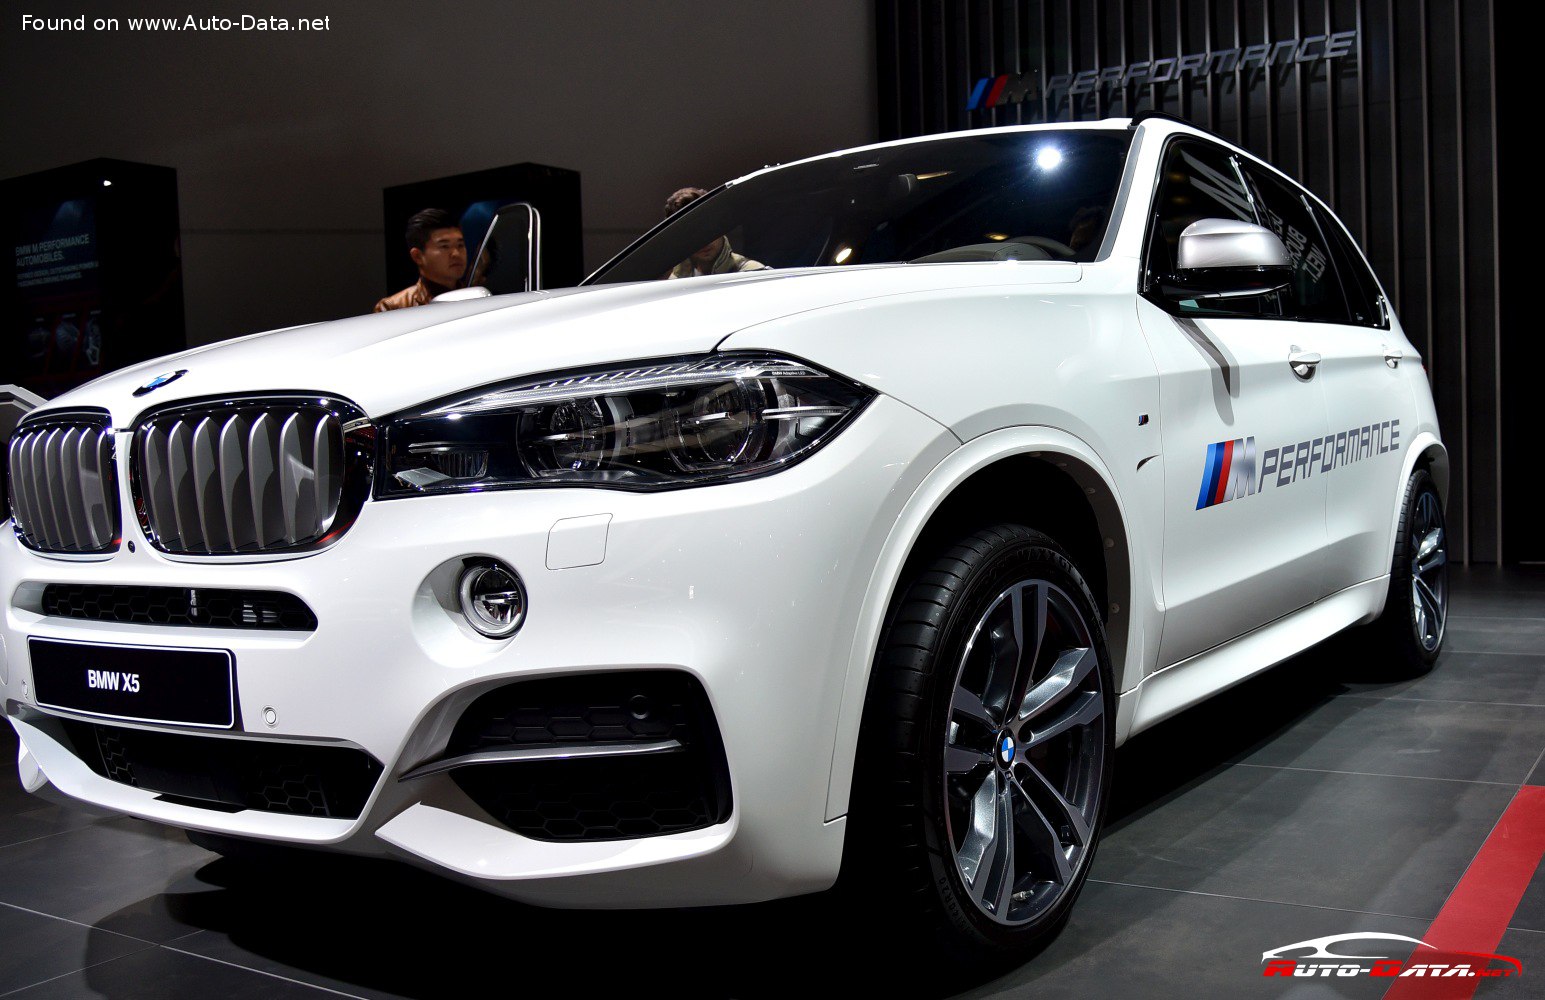 2013 BMW X5 (F15)  Technical Specs, Fuel consumption, Dimensions